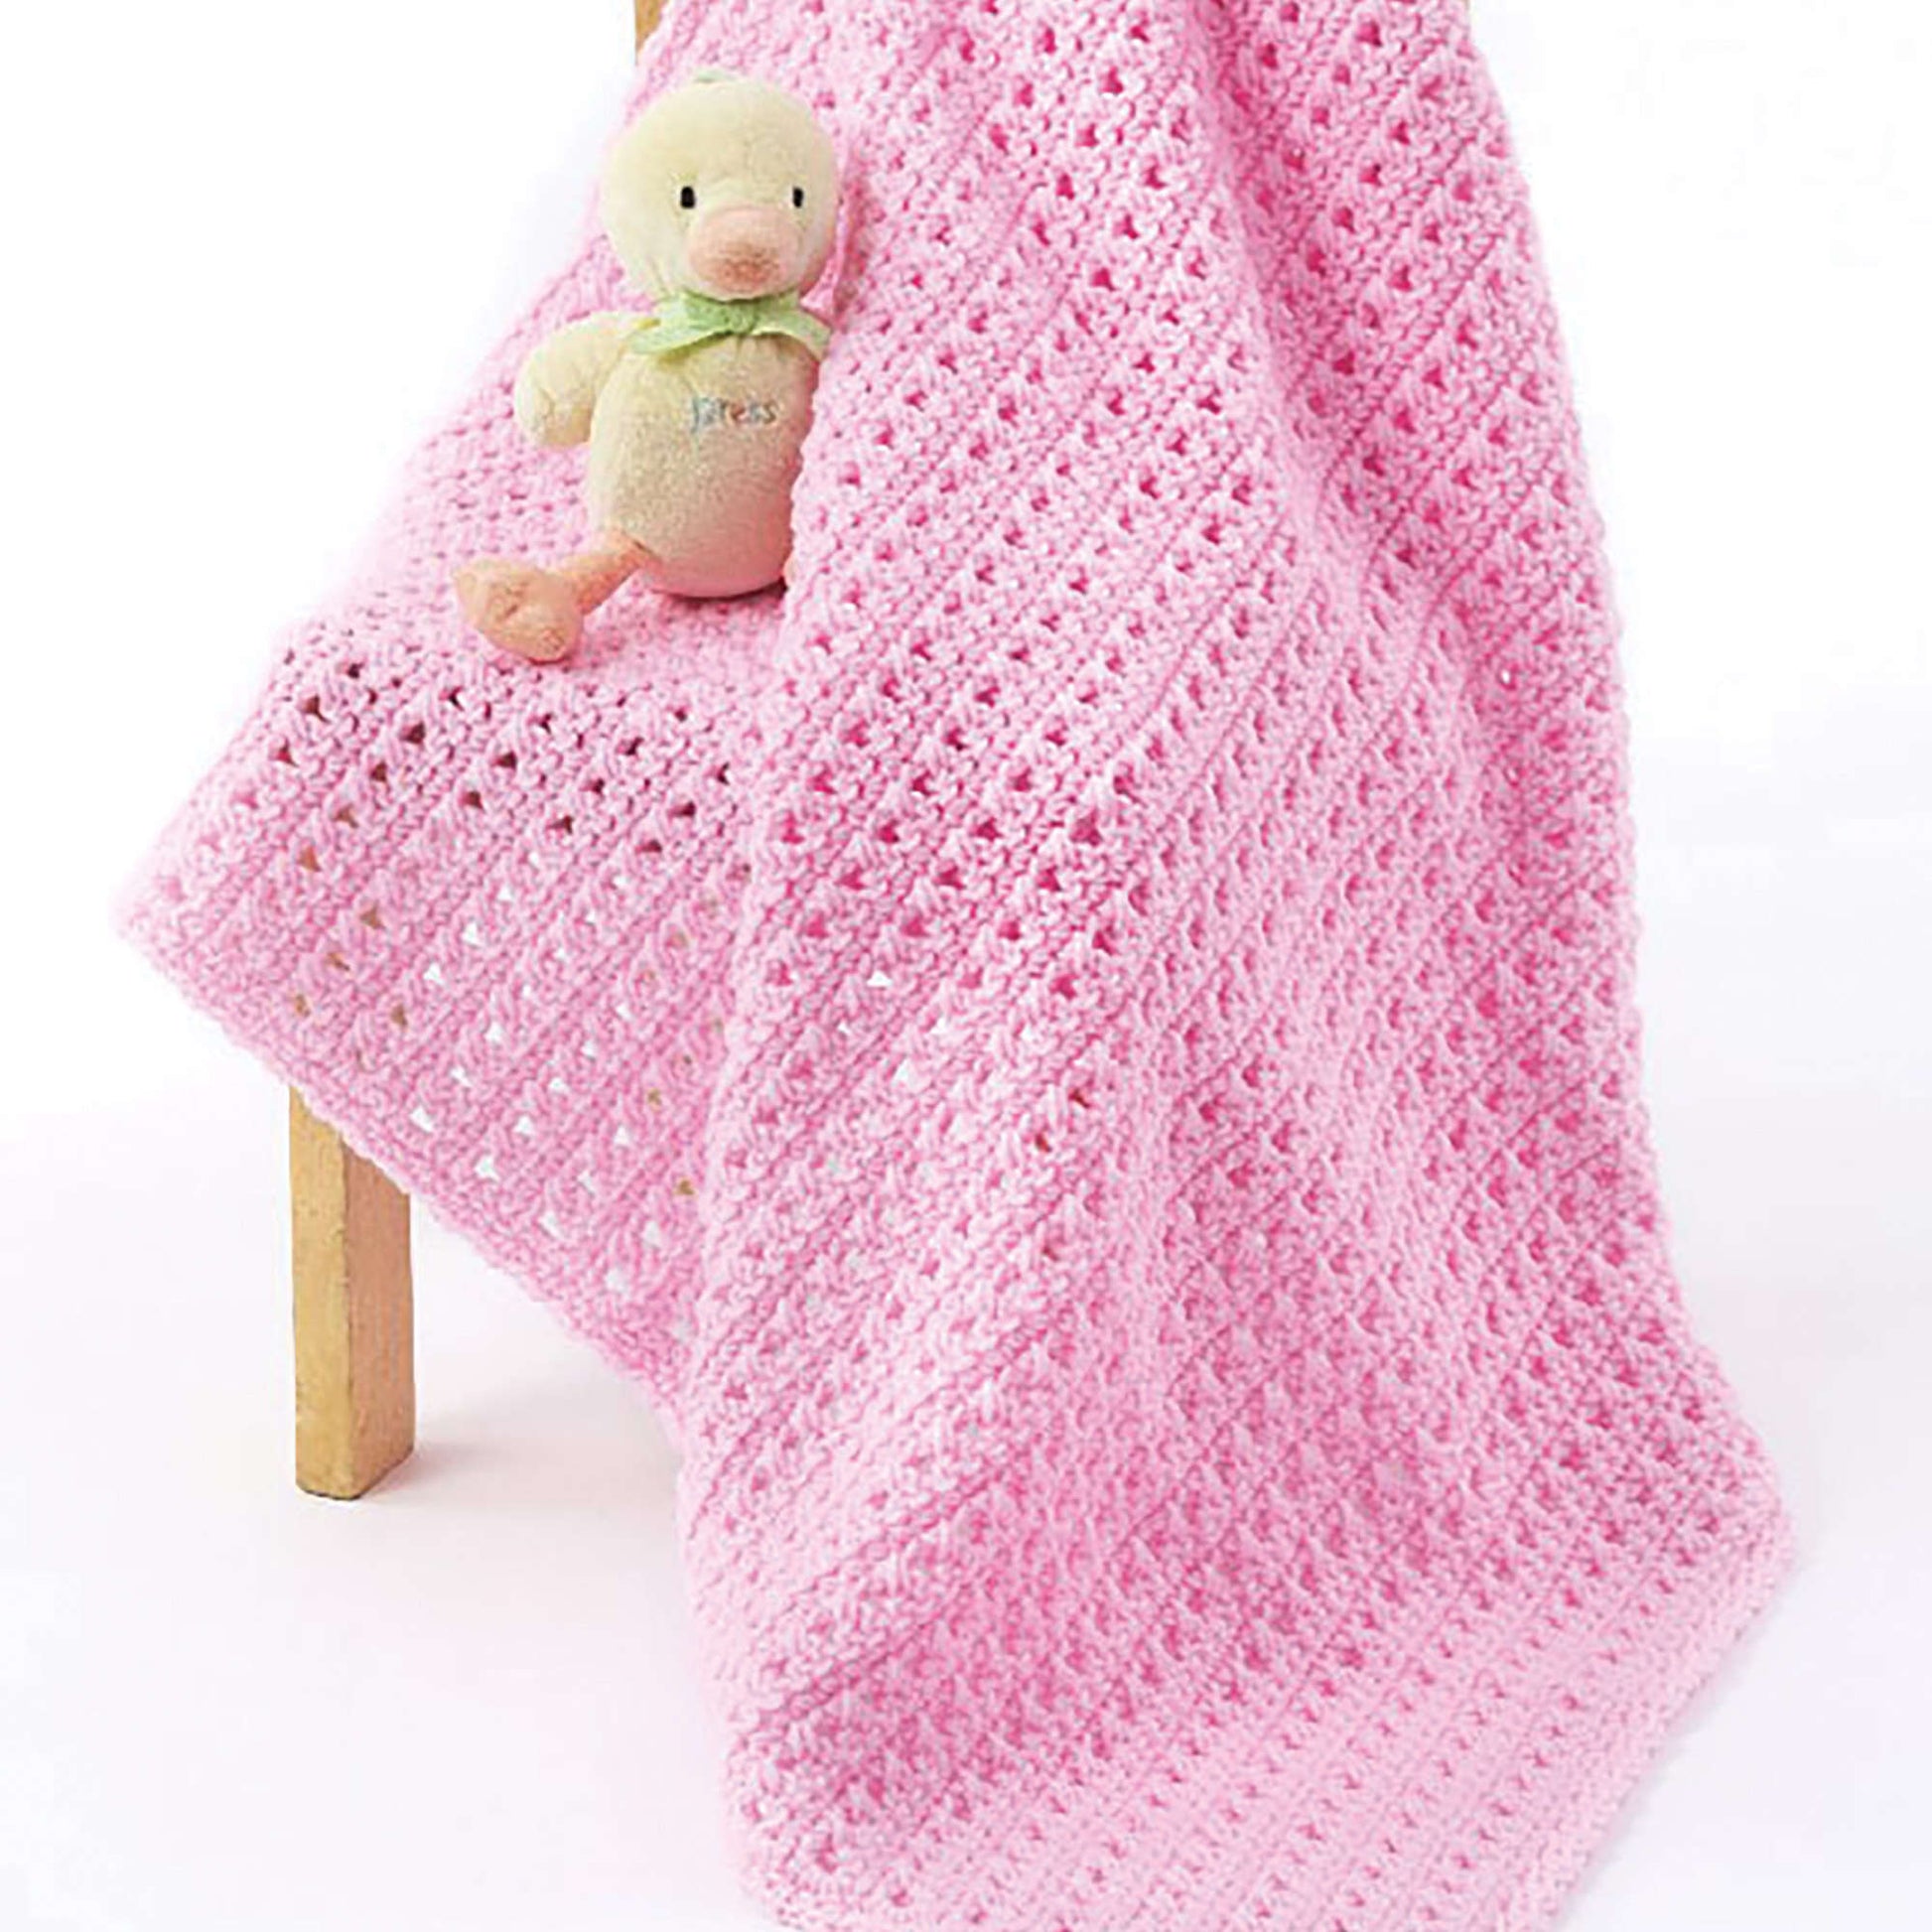 Free Caron One Skein Crochet Baby Blanket Pattern